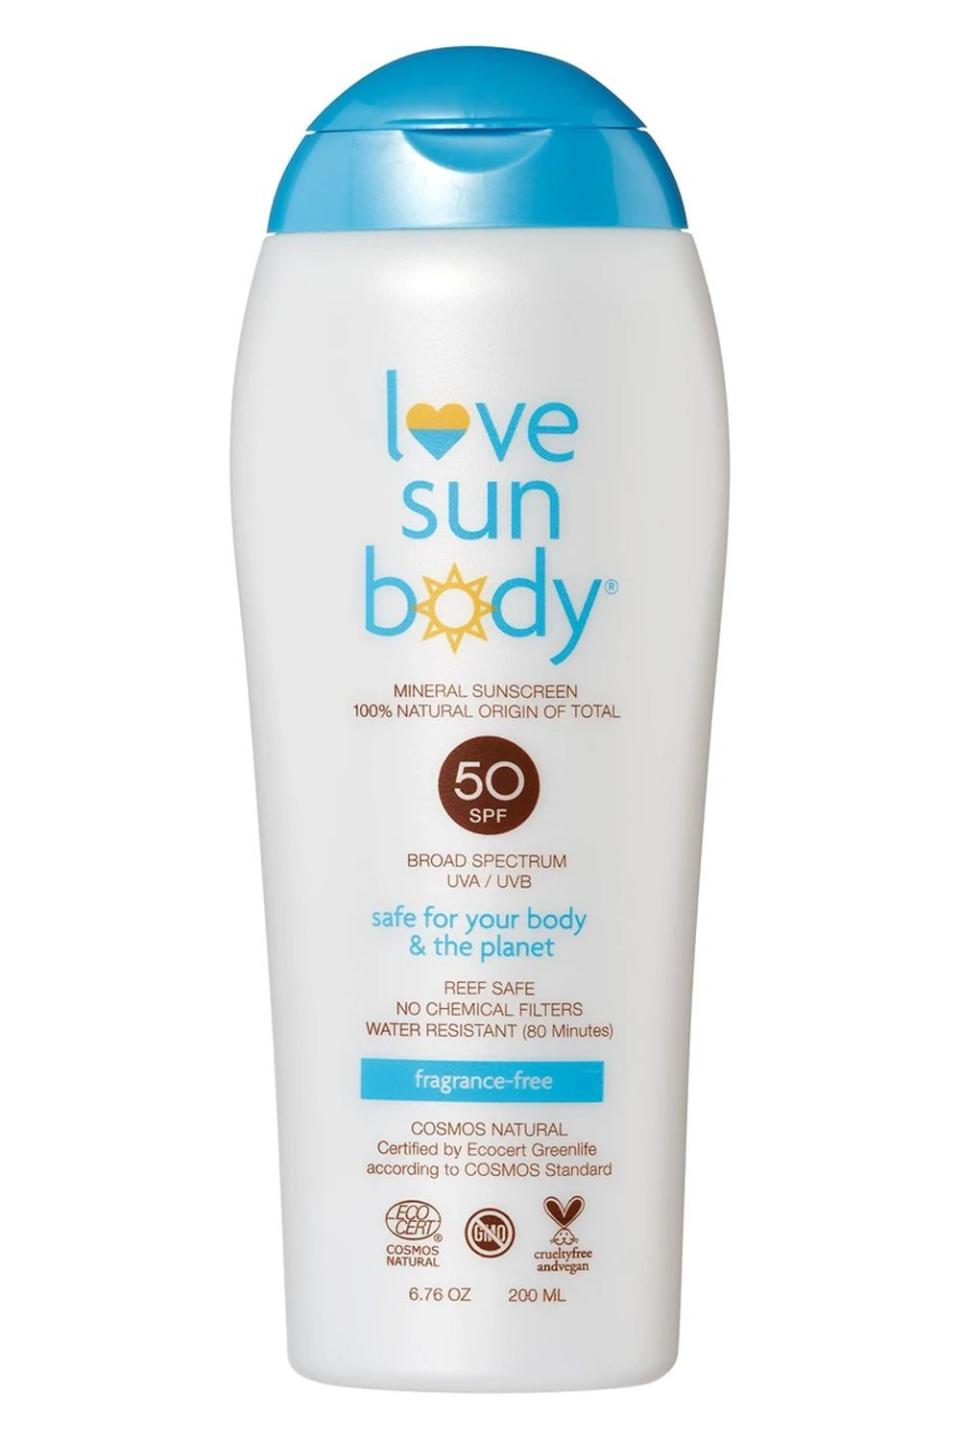 2) Love Sun Body Mineral Sunscreen SPF 50 Fragrance-Free